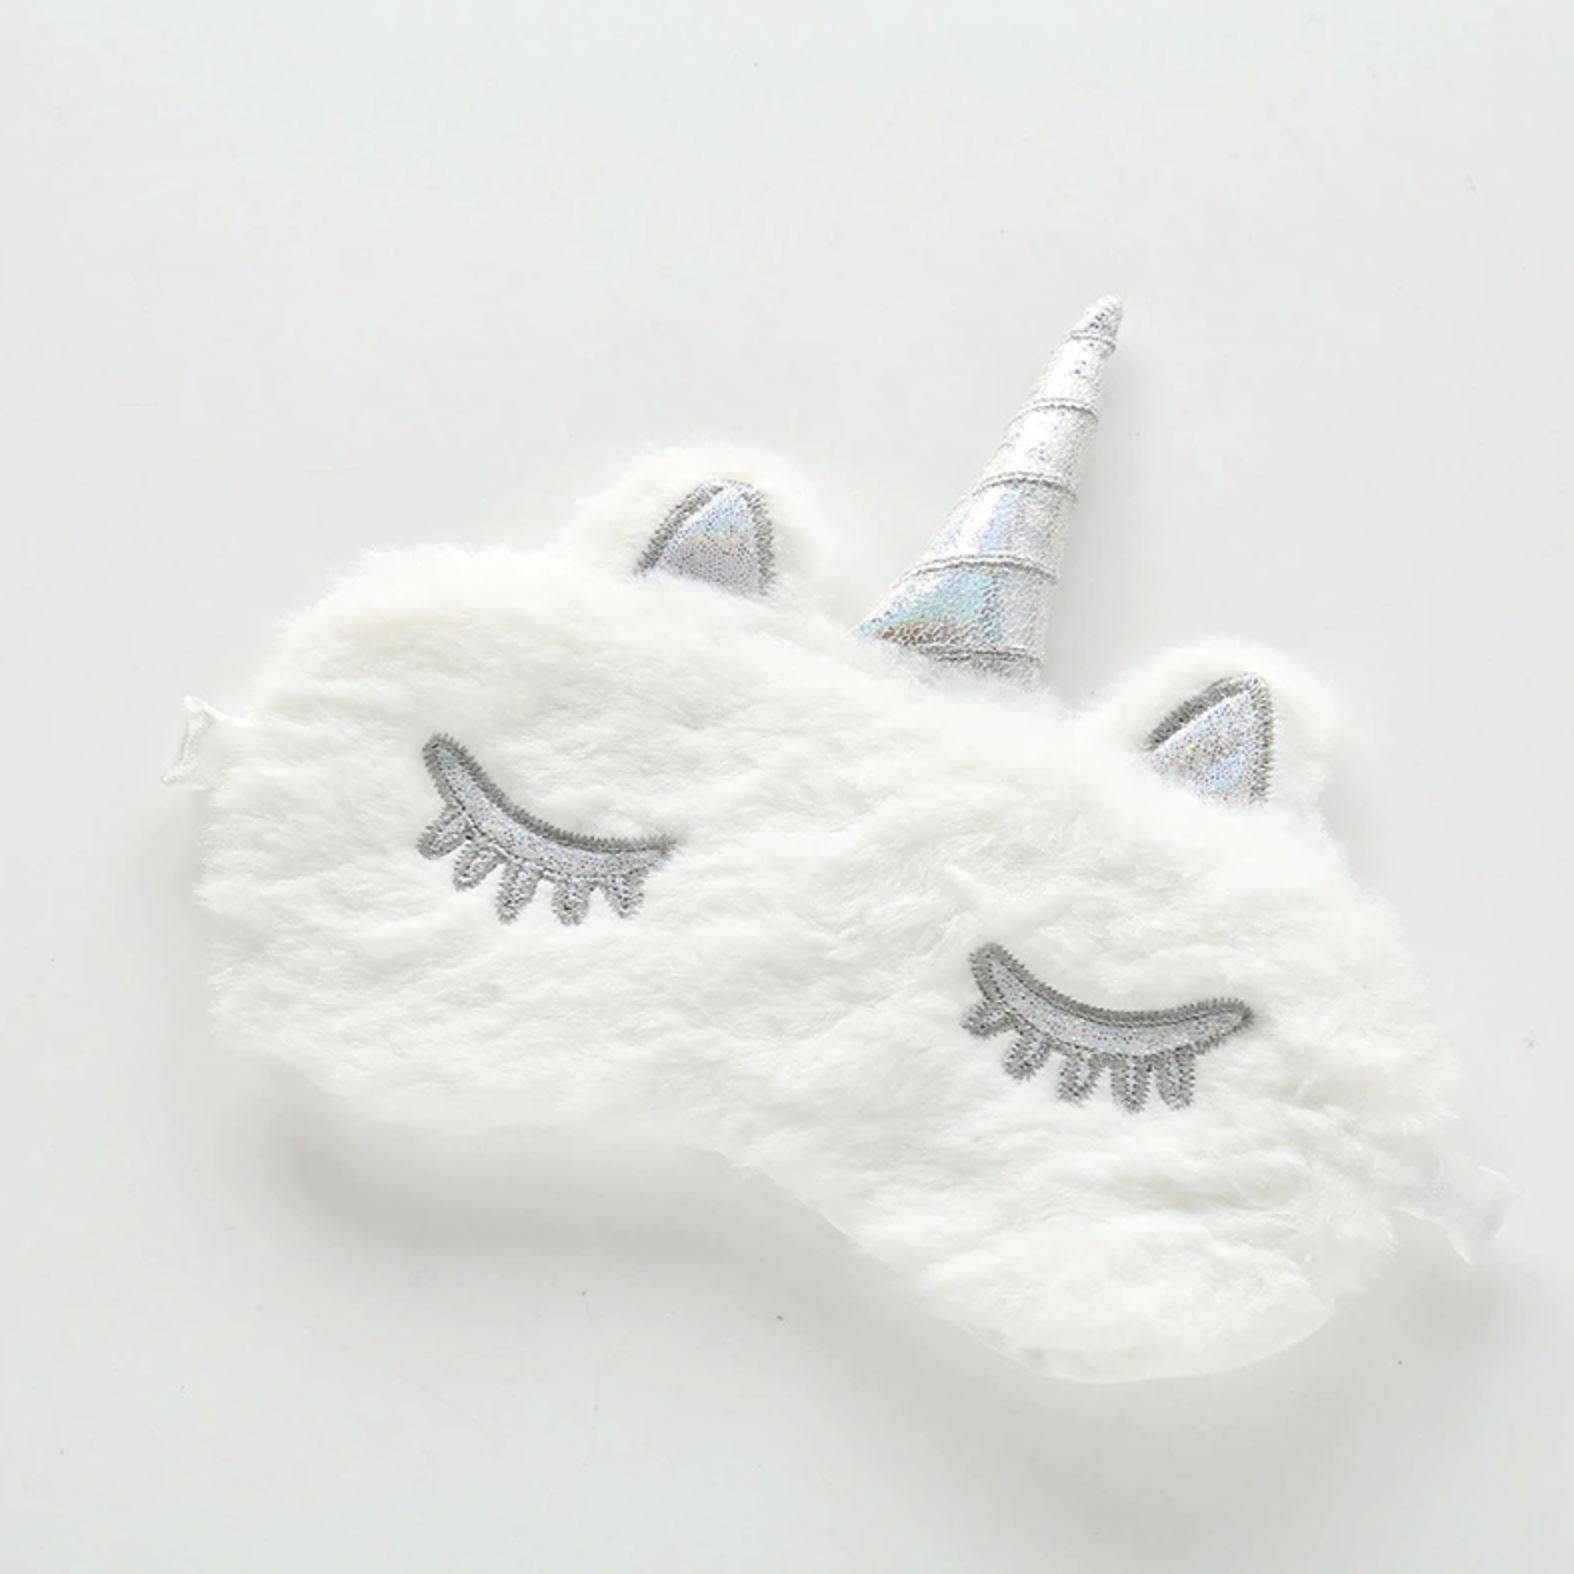 Unicorn Mask White Plush - Unicorn